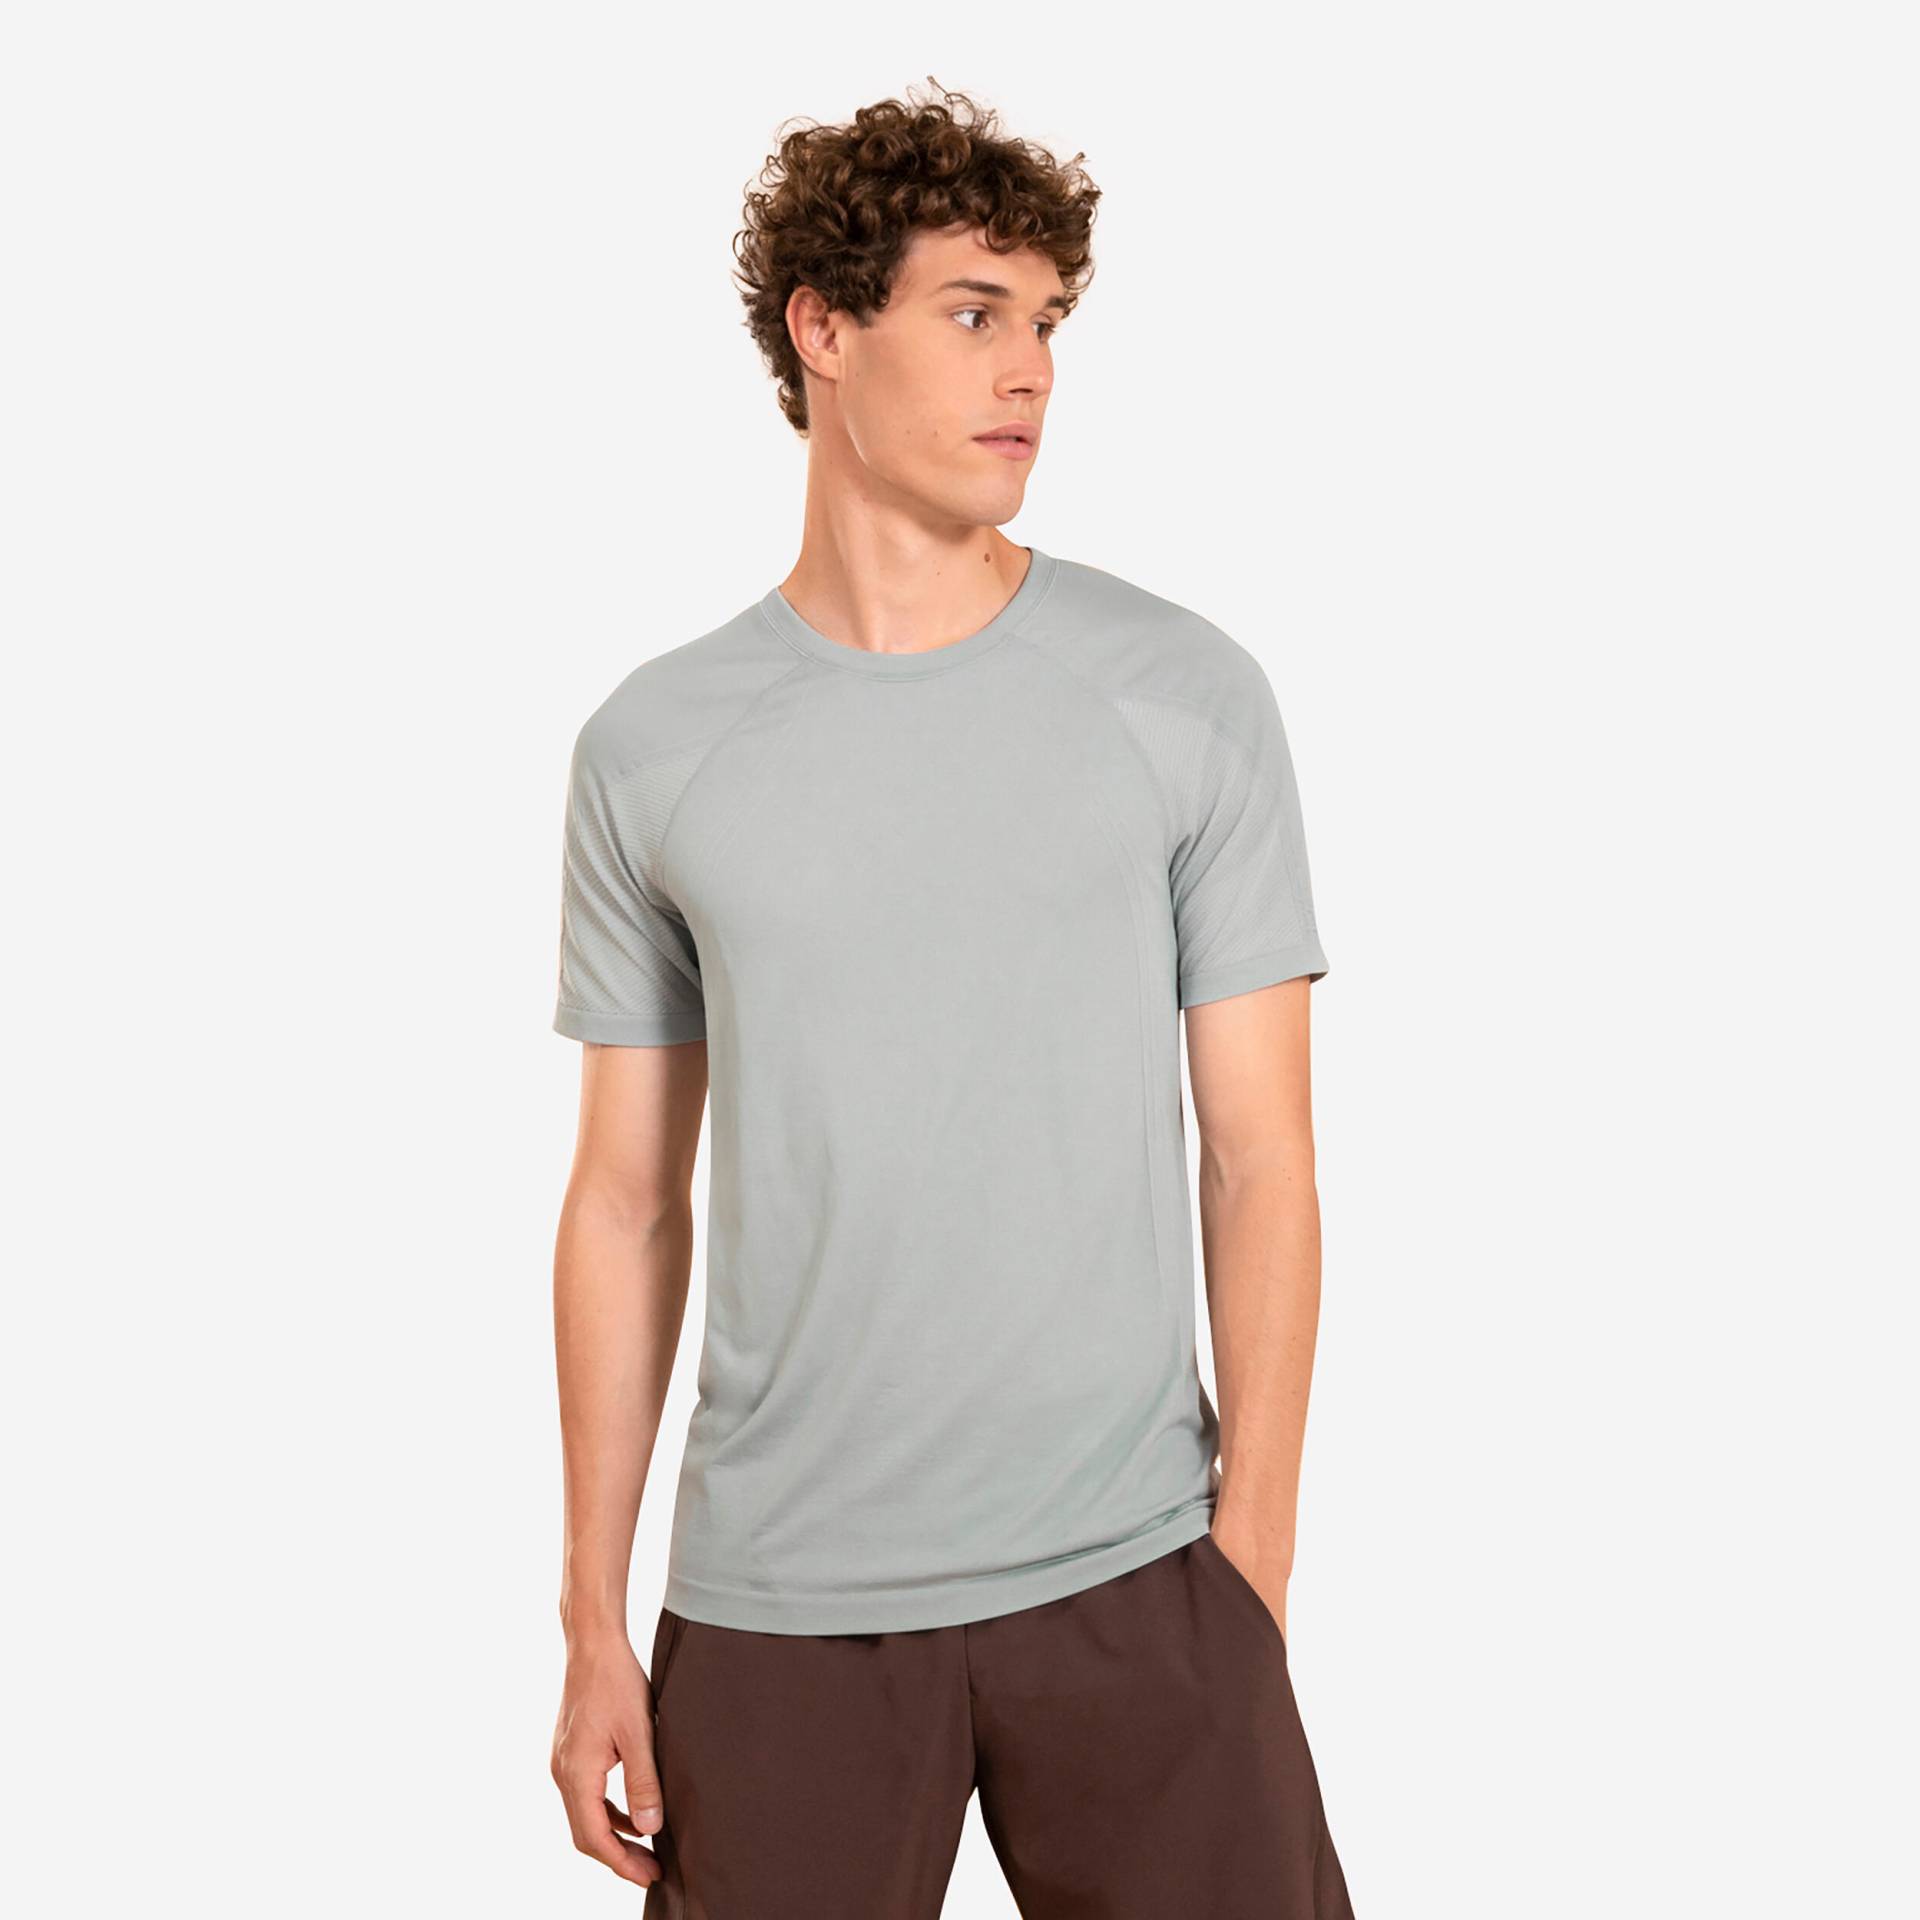 T-Shirt Herren Yoga nahtlos zweite Haut - hellgrau von KIMJALY